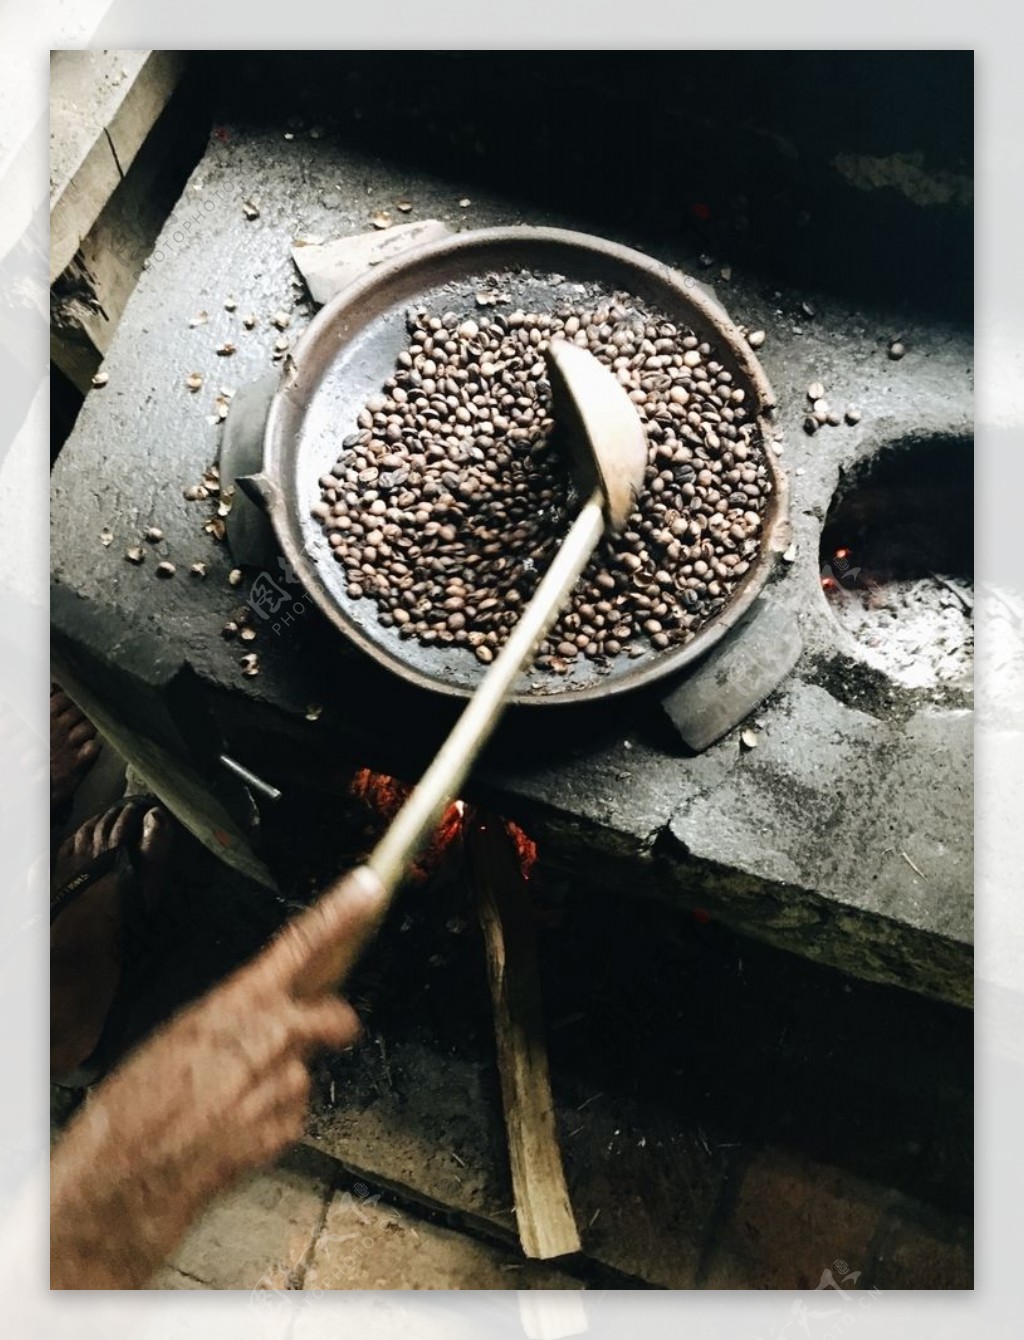 炒咖啡豆